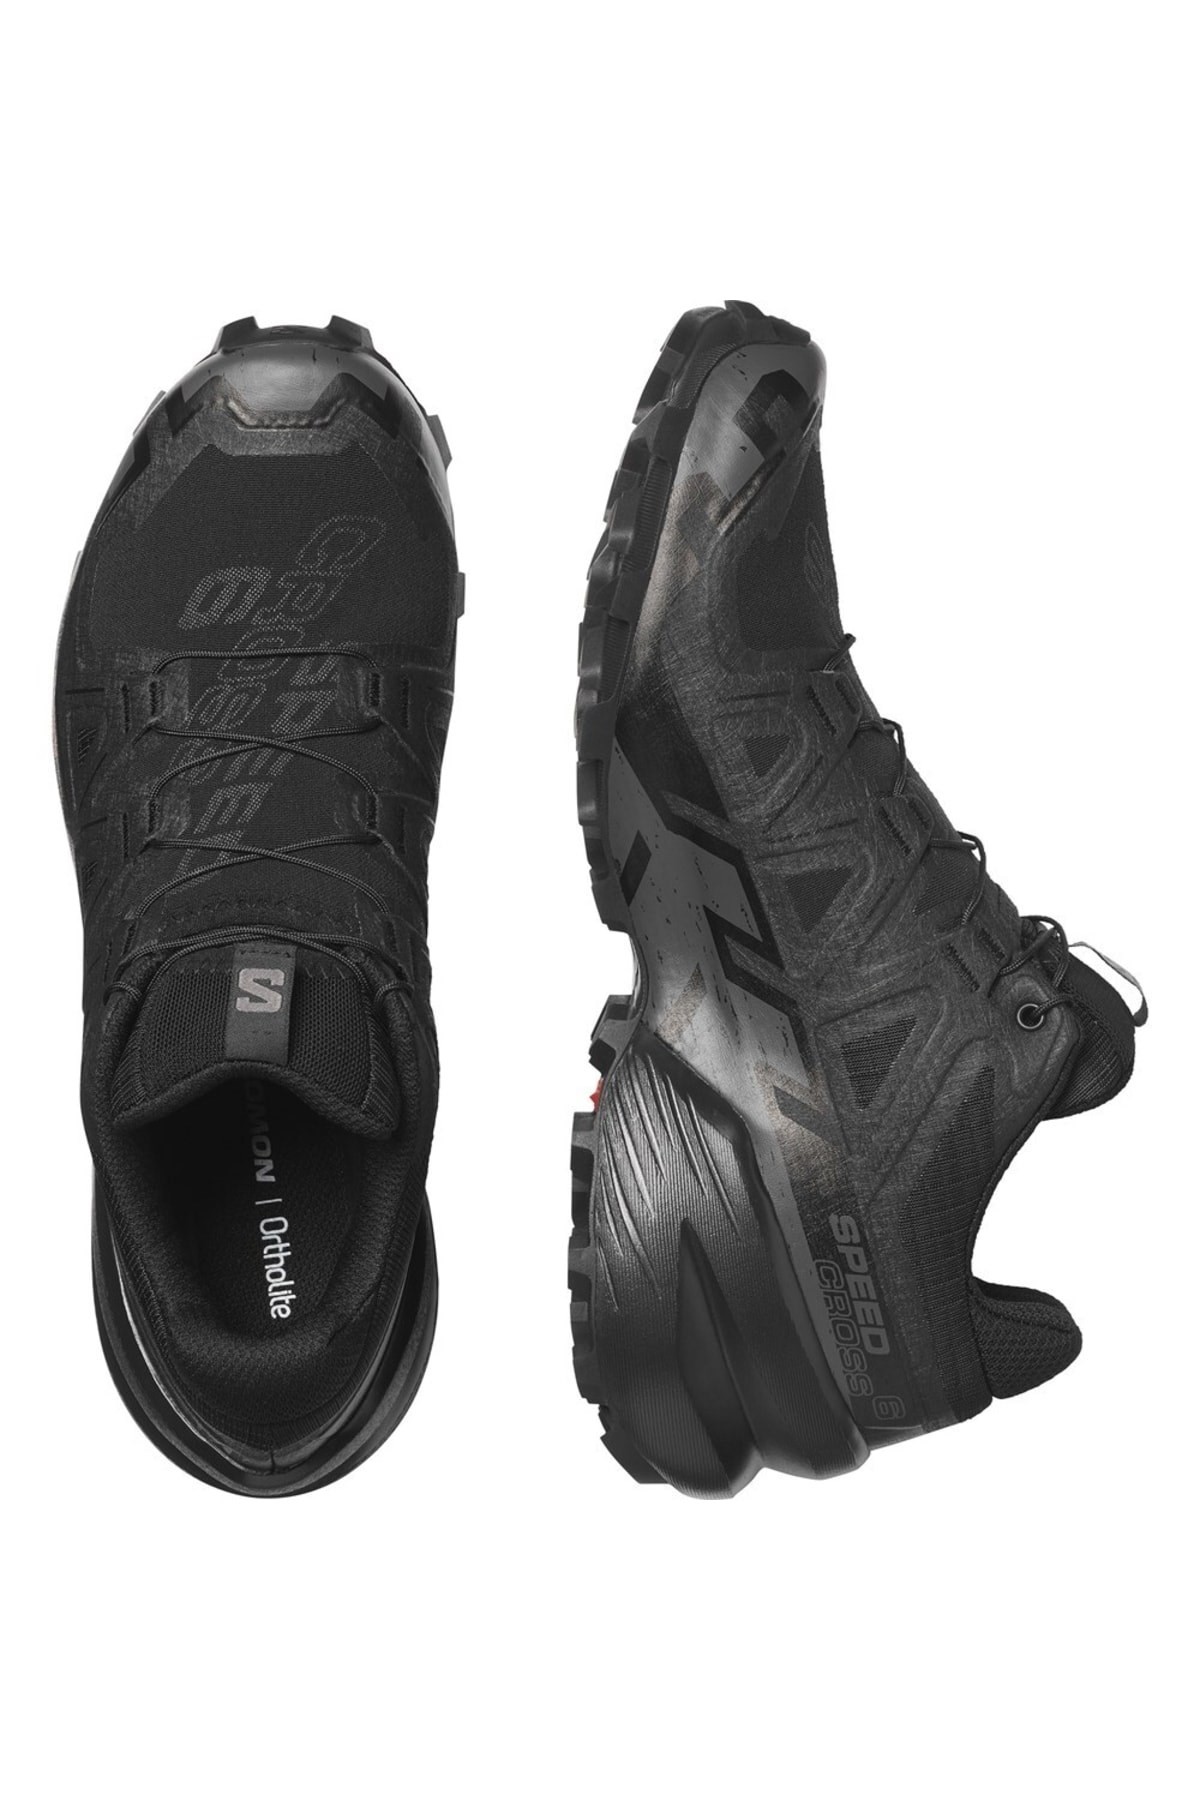 Salomon Speedcross 6 Kadın Koşu Ayakkabısı L41742800